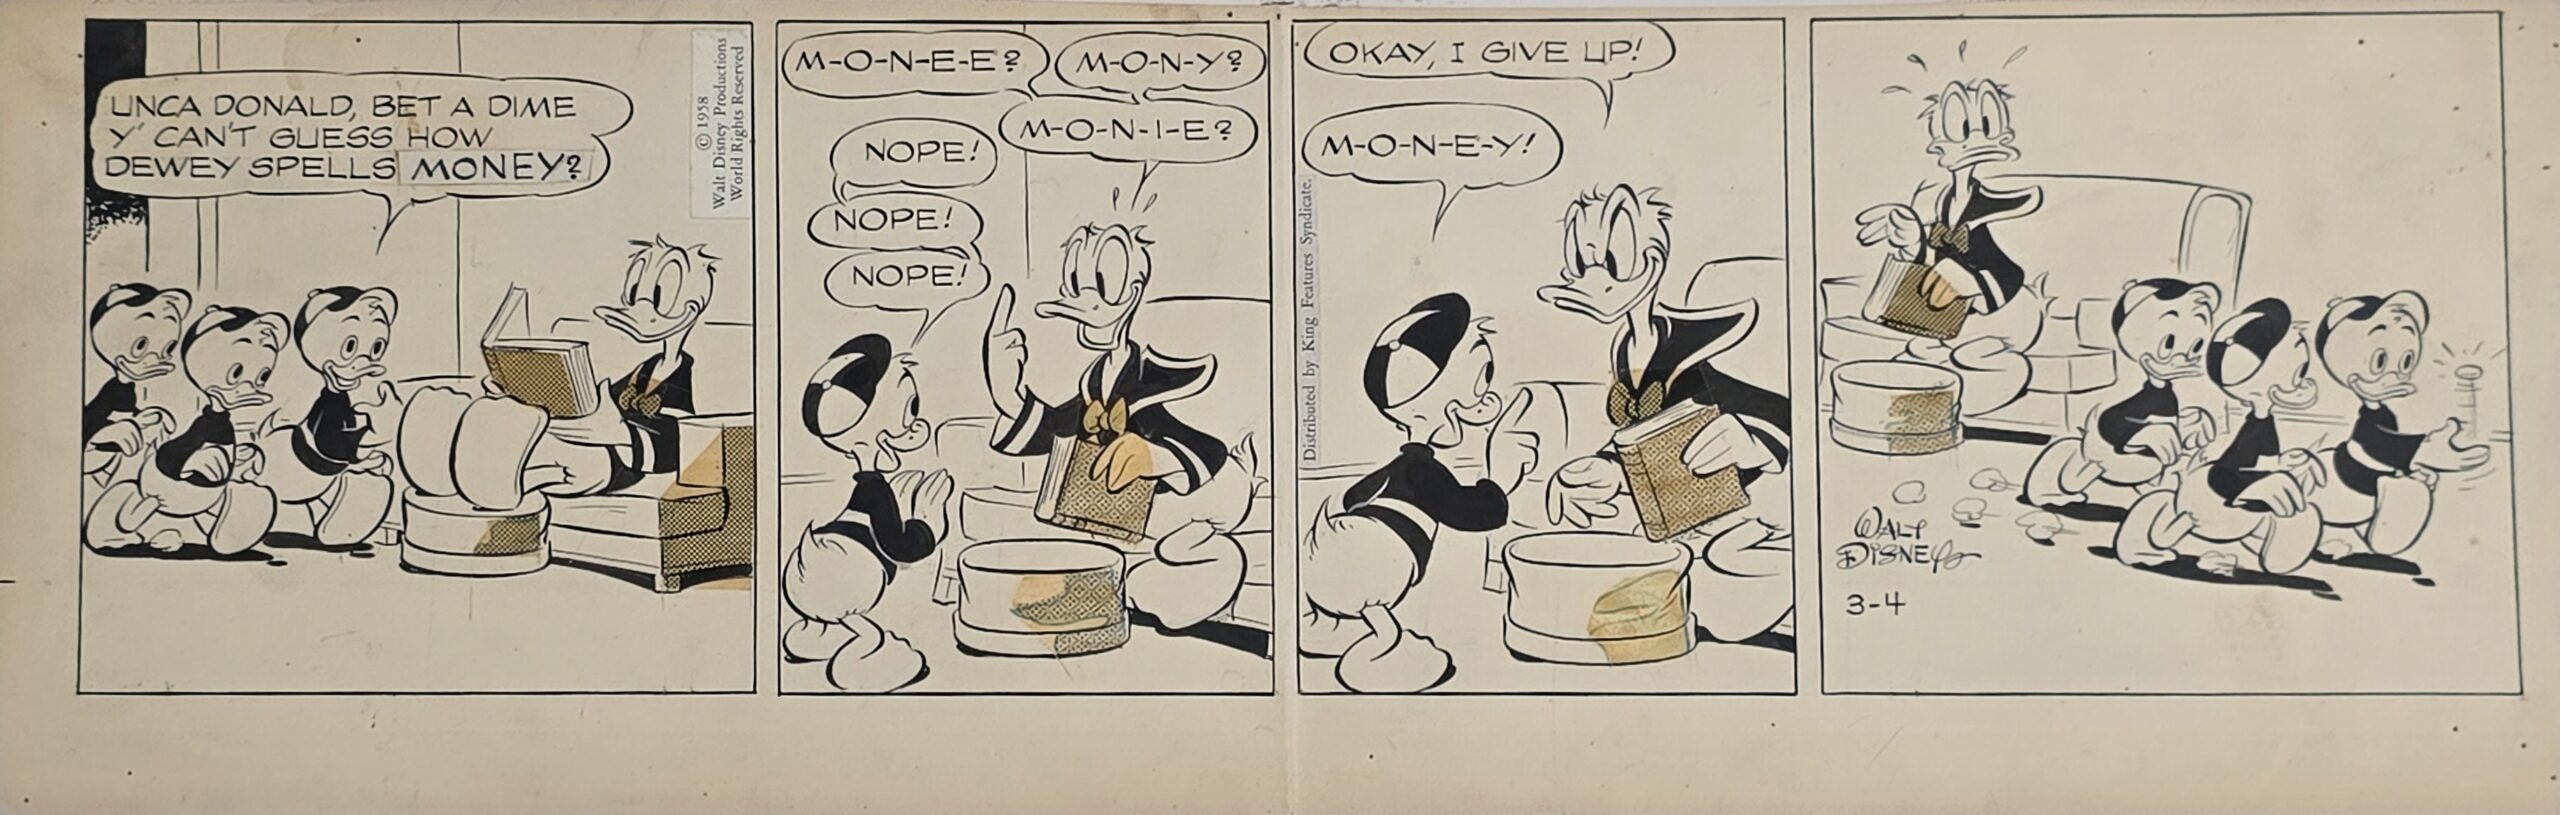 Original Strip Al Taliaferro – Donald Duck 03-04-58